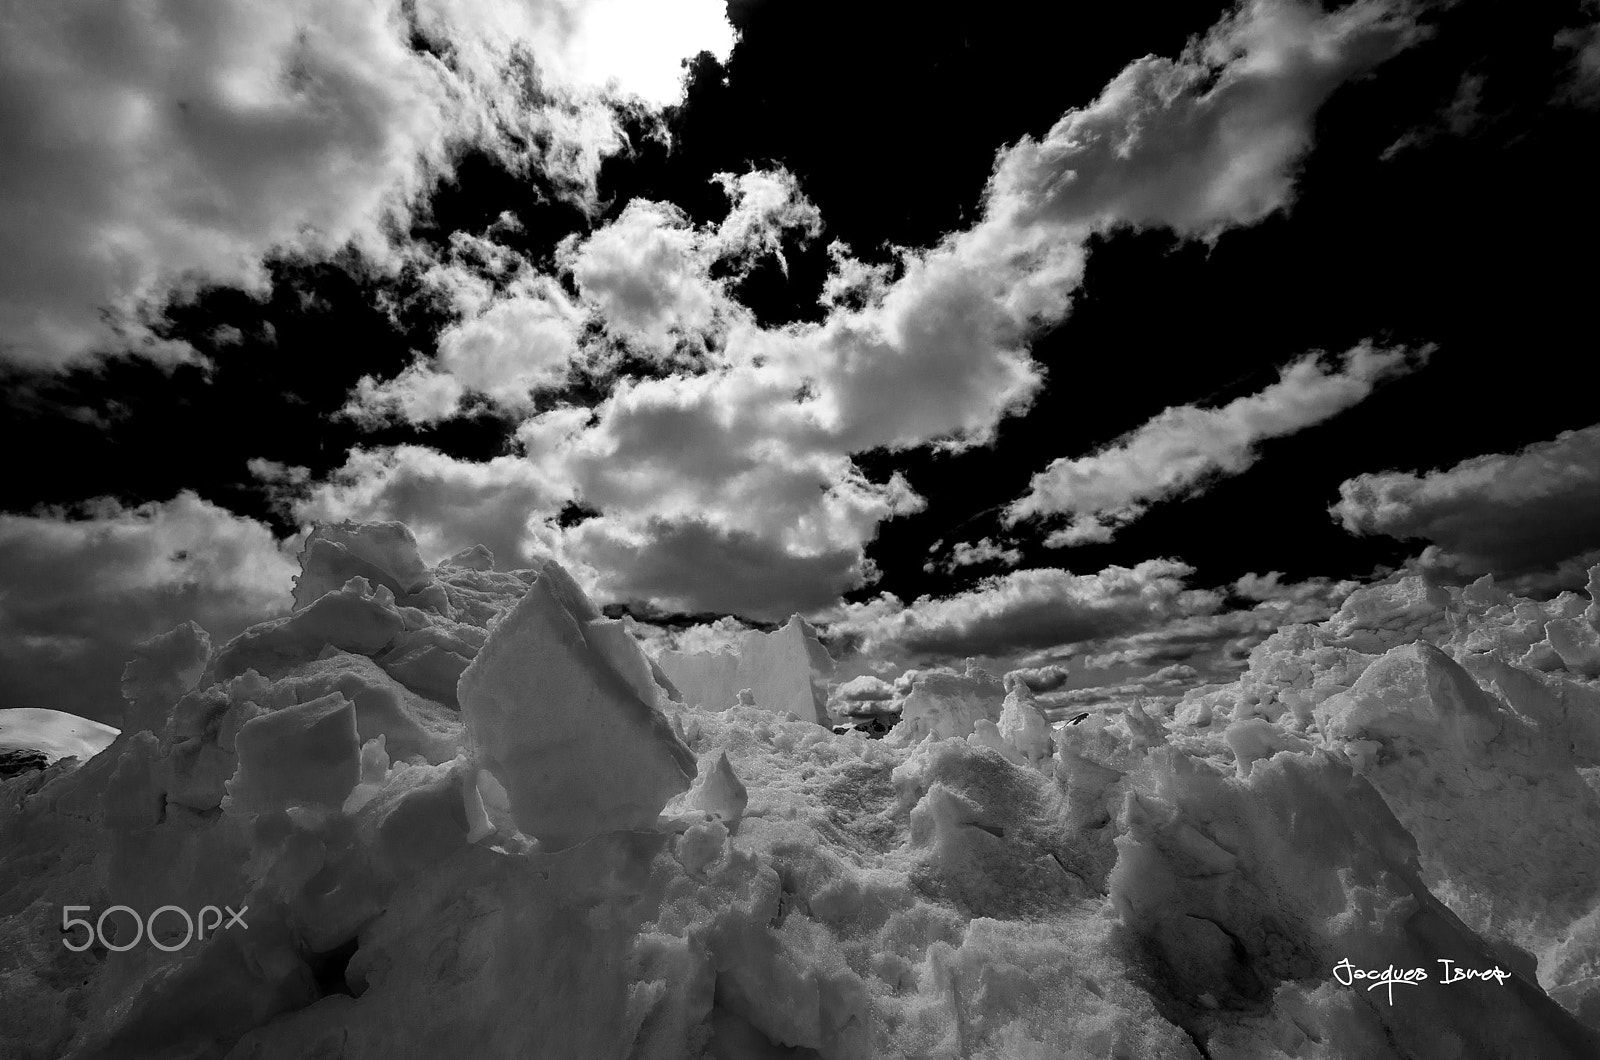 Pentax K-5 + Tamron SP AF 10-24mm F3.5-4.5 Di II LD Aspherical (IF) sample photo. Entre neige et ciel photography